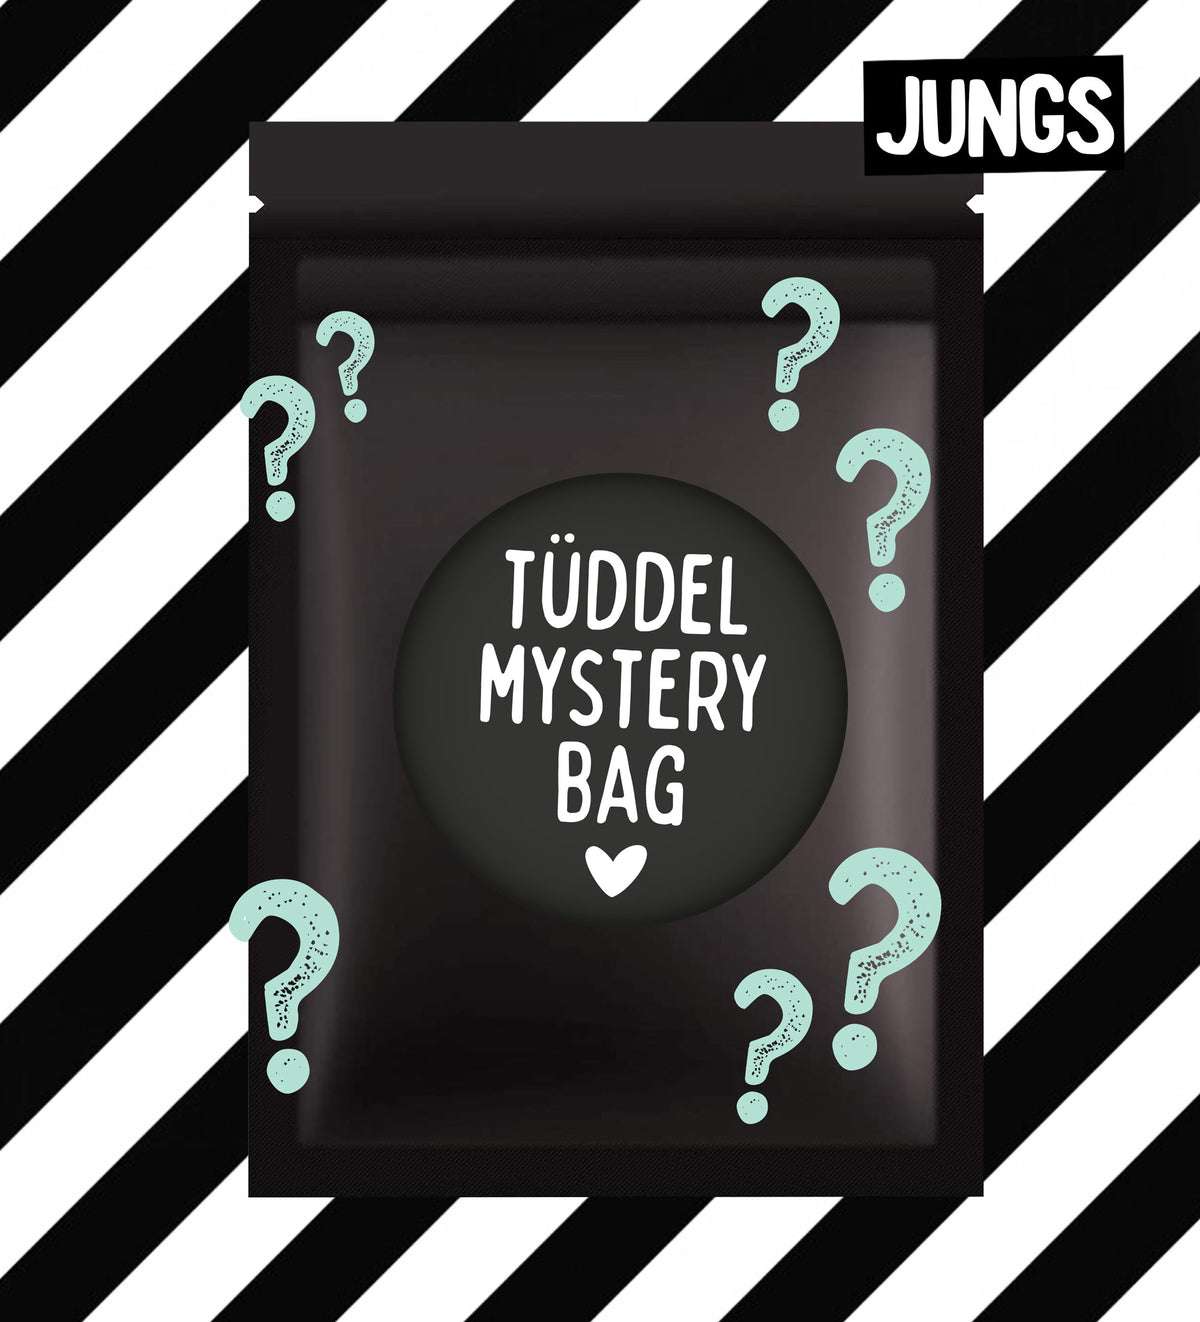 Tüddel Mystery Bag - Jungs *AUGUST*